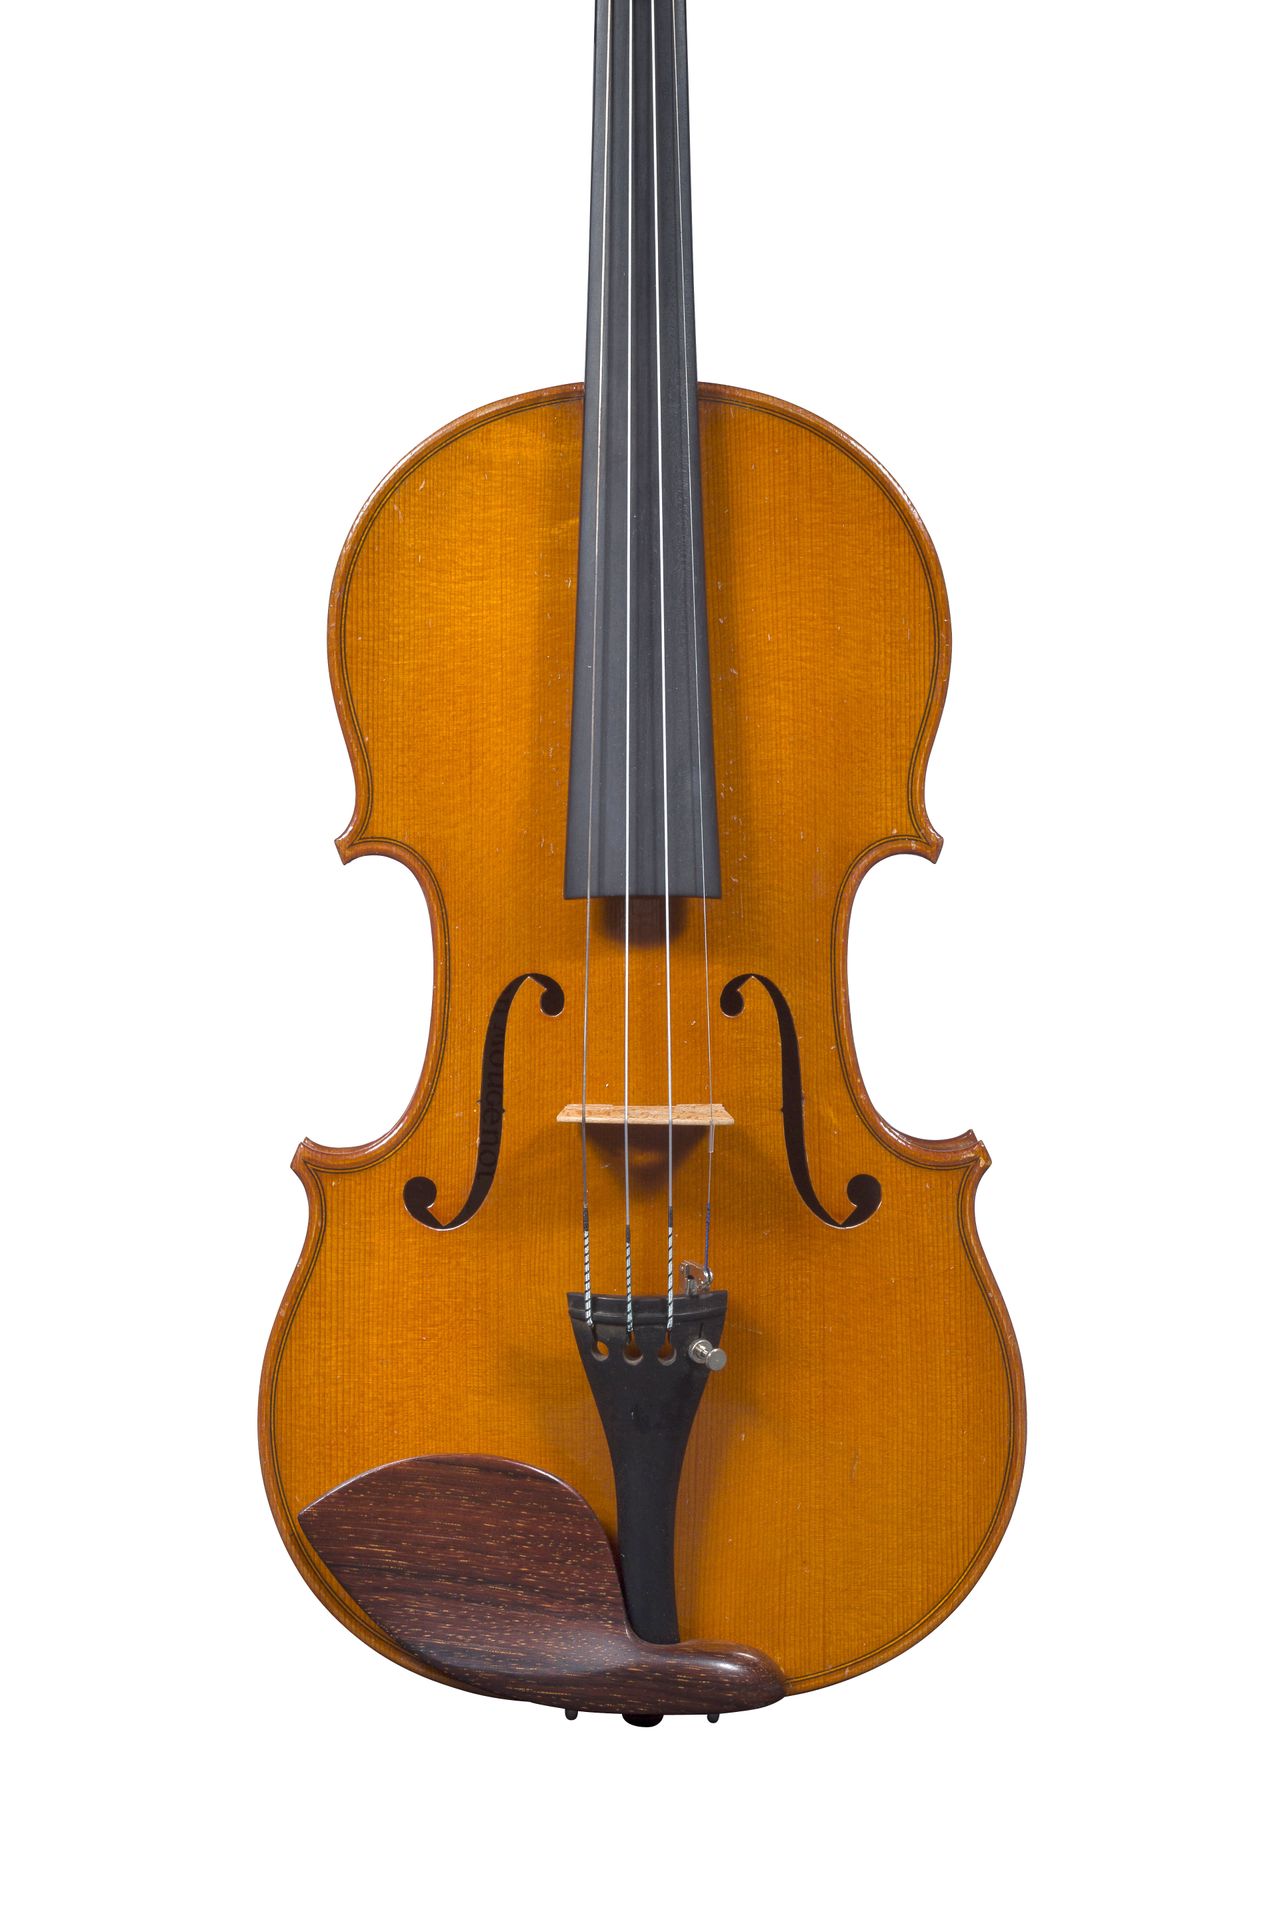 Violon de Léon Mougenot Jacquet Gand Hergestellt in Mirecourt 1925, Nummer 479.
&hellip;